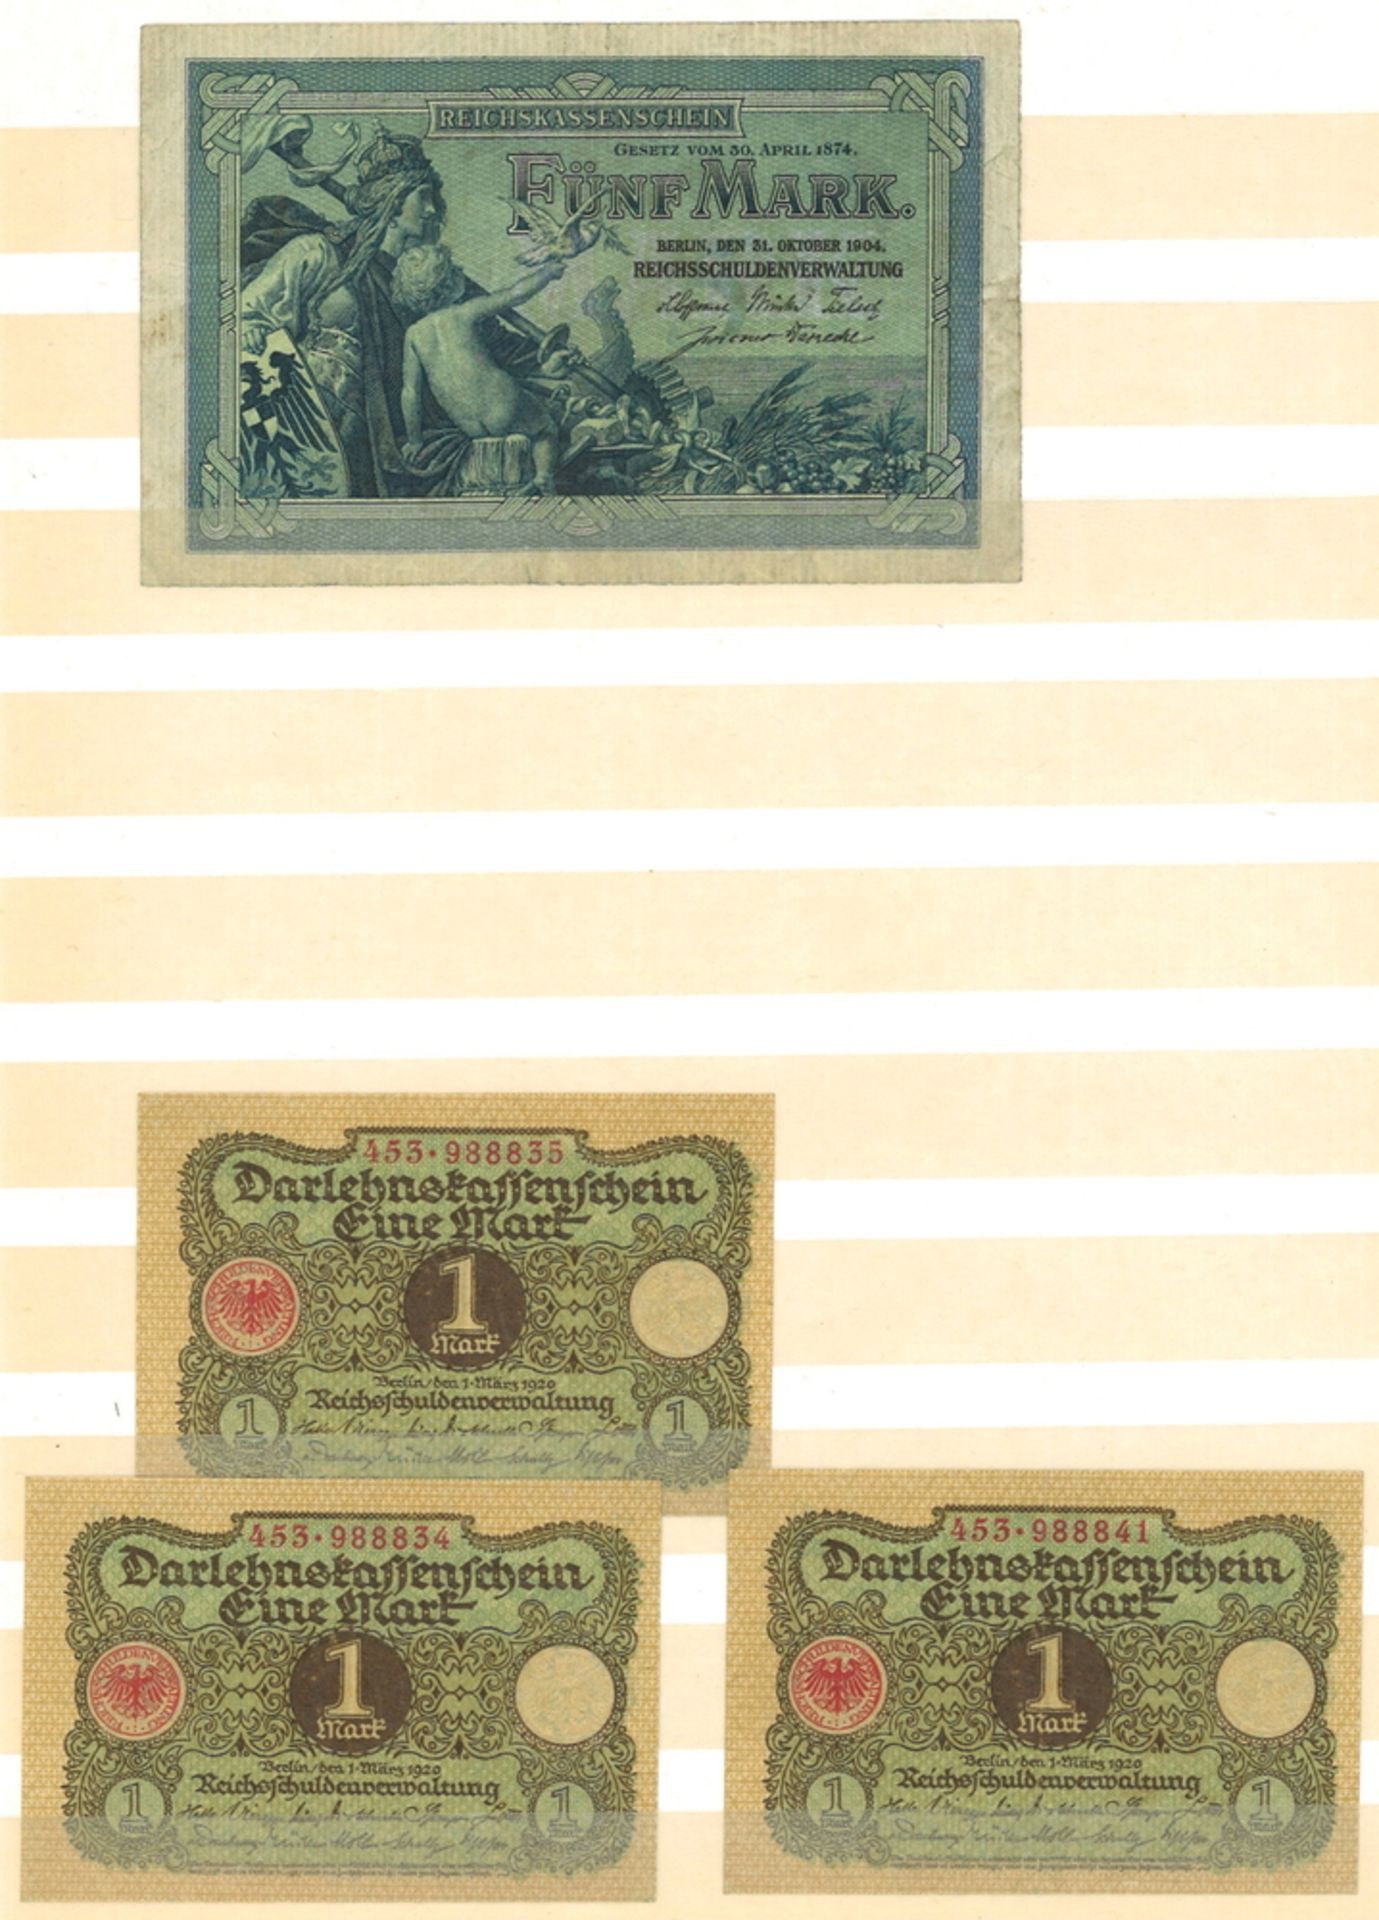 Einsteckbuch mit über 110 Banknoten und Notgeldscheinen Deutsches Reich - Bild 3 aus 3